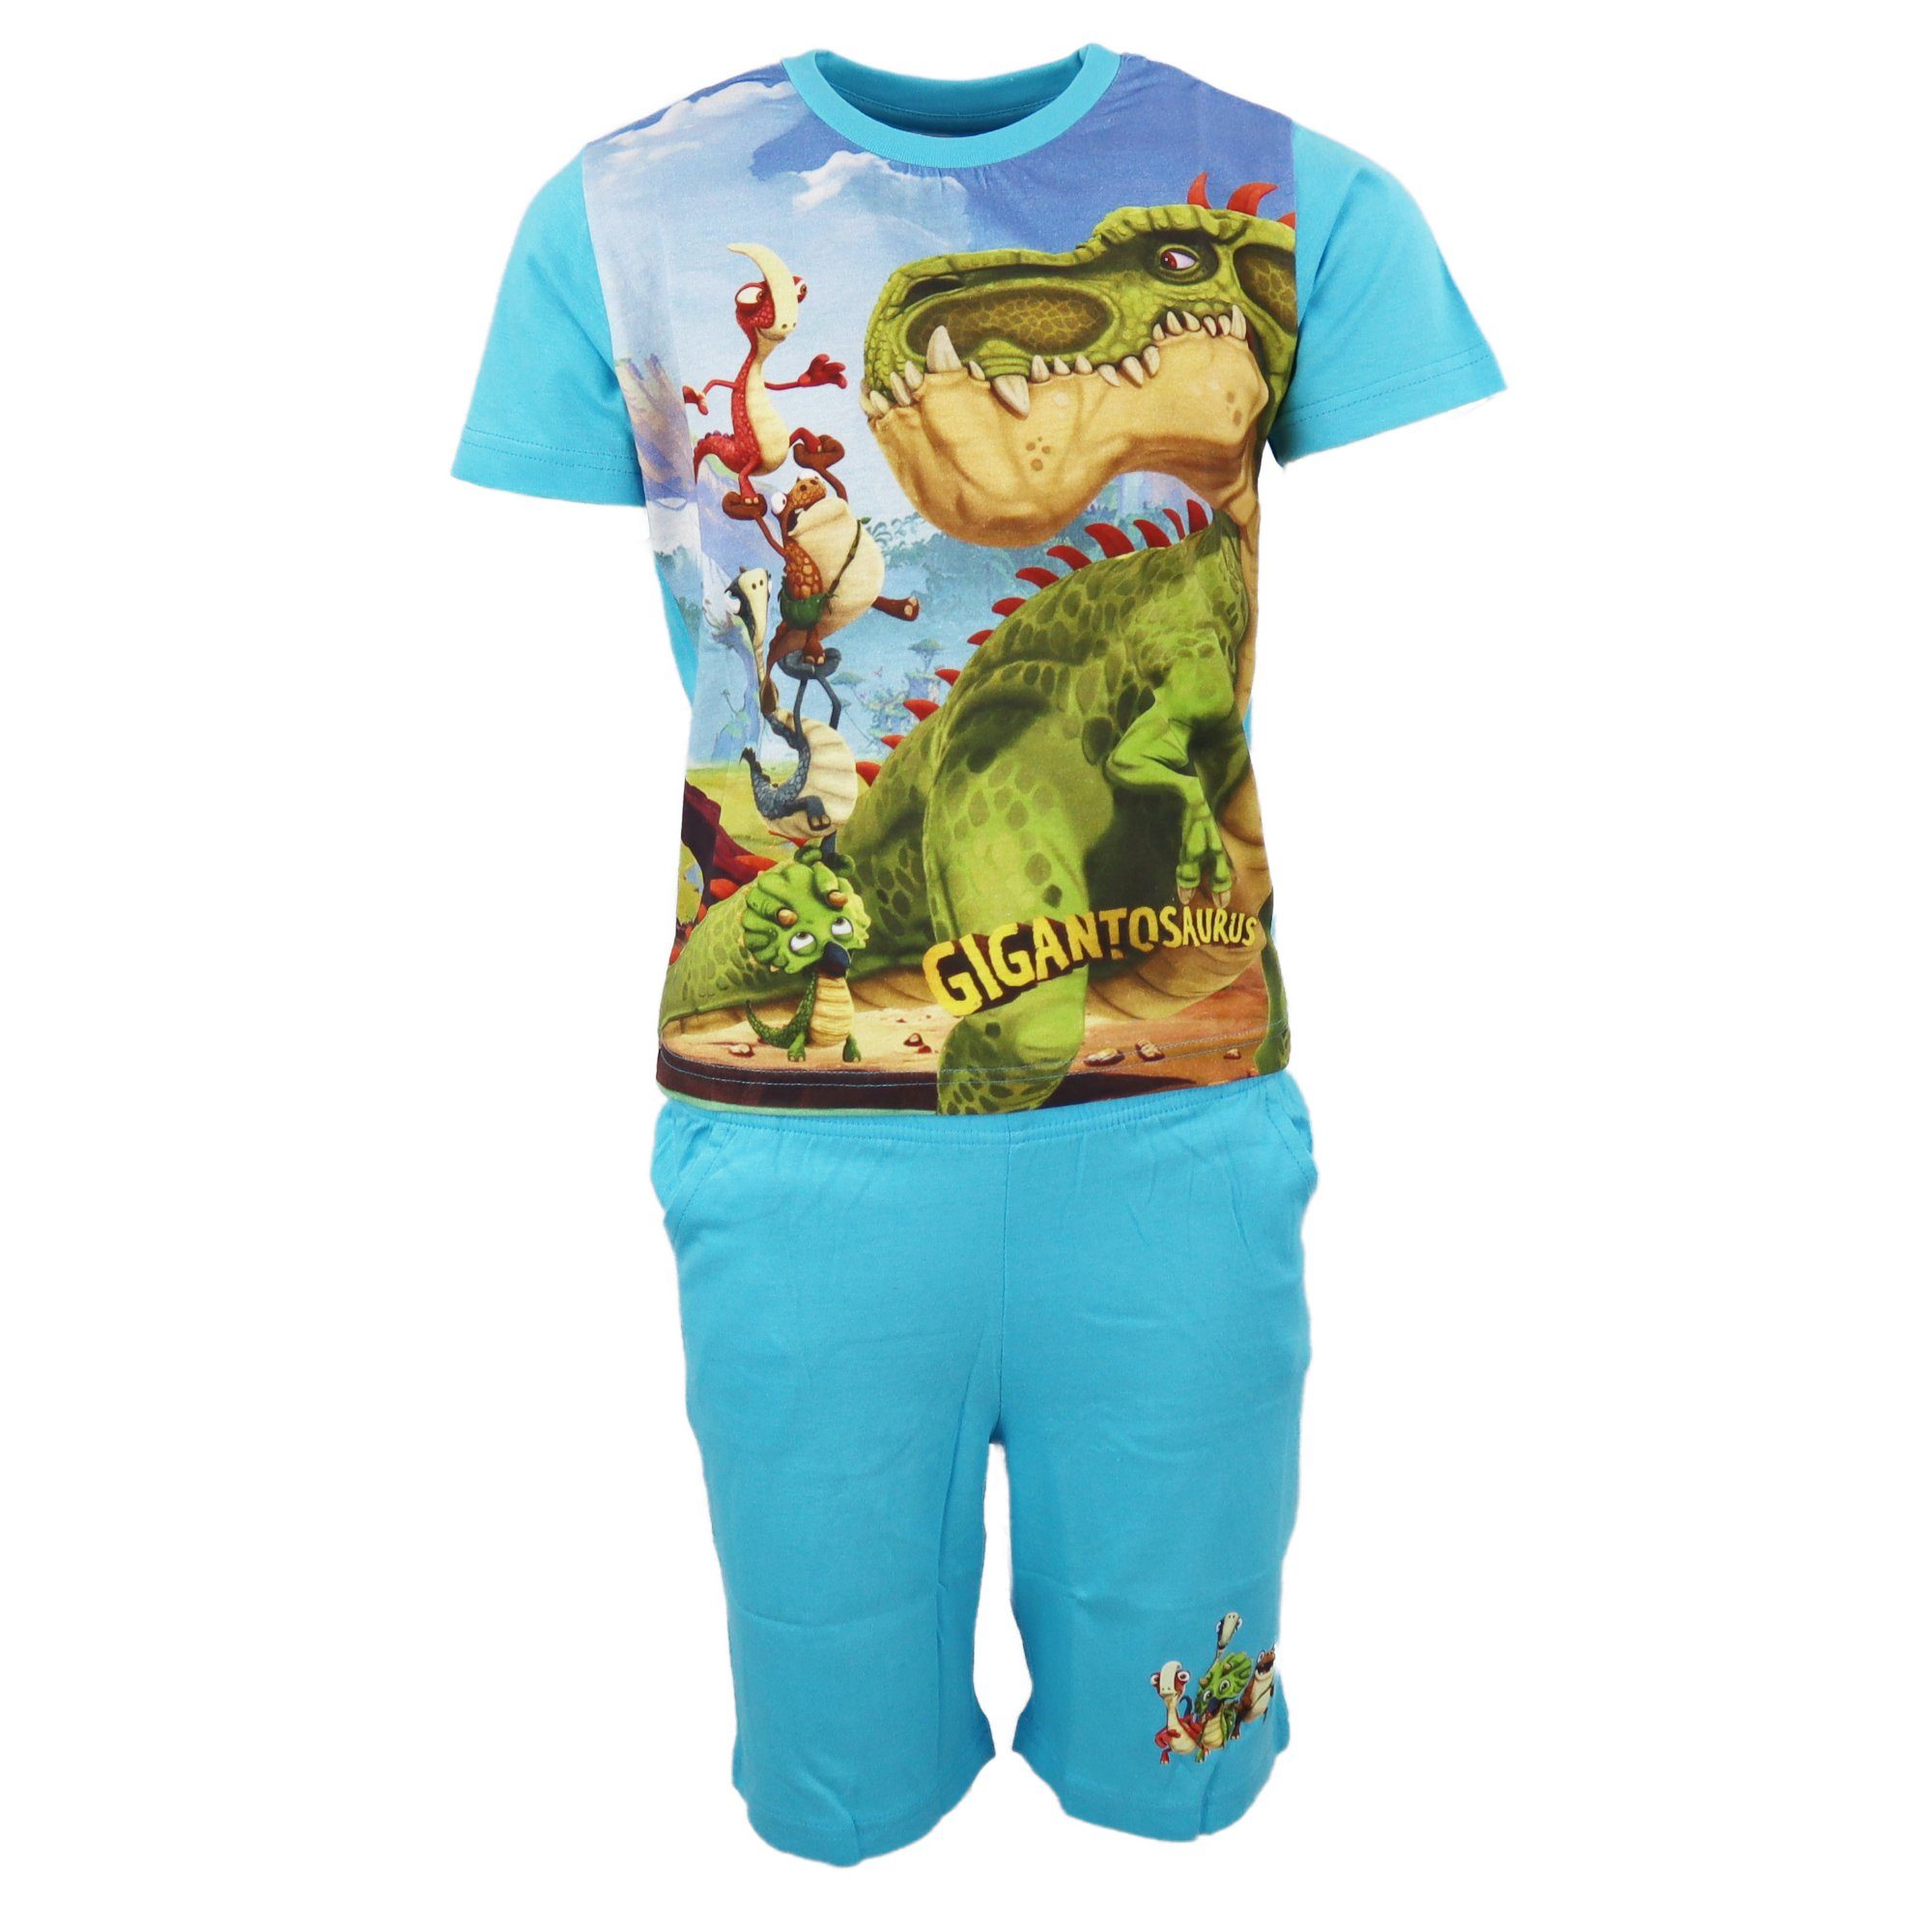 Cyber Group bis Kinder - 98 Baumwolle Pyjama Studios Hellblau 100% Gigantosaurus 128 Schlafanzug Jungen Gr